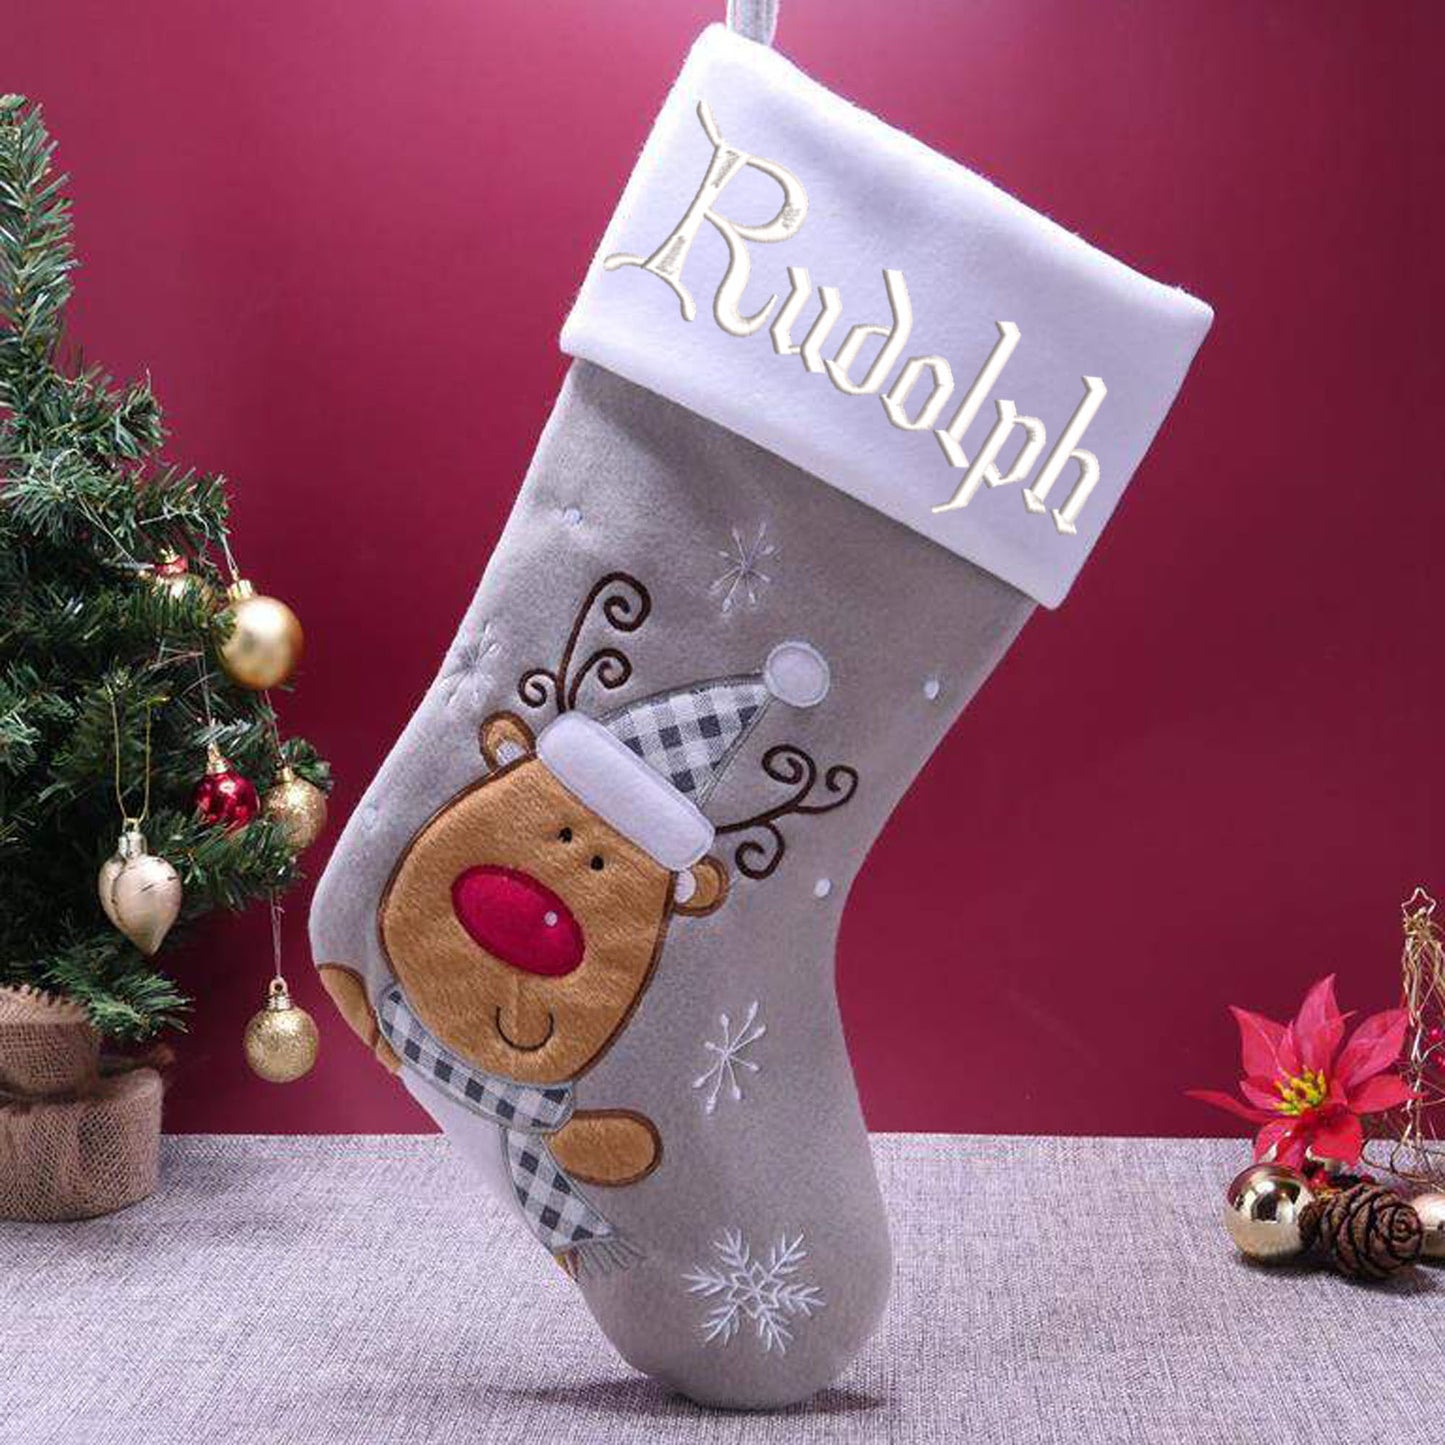 Personalised Embroidered Grey Christmas Santa Stocking Reindeer Or Santa Design  - Always Looking Good -   